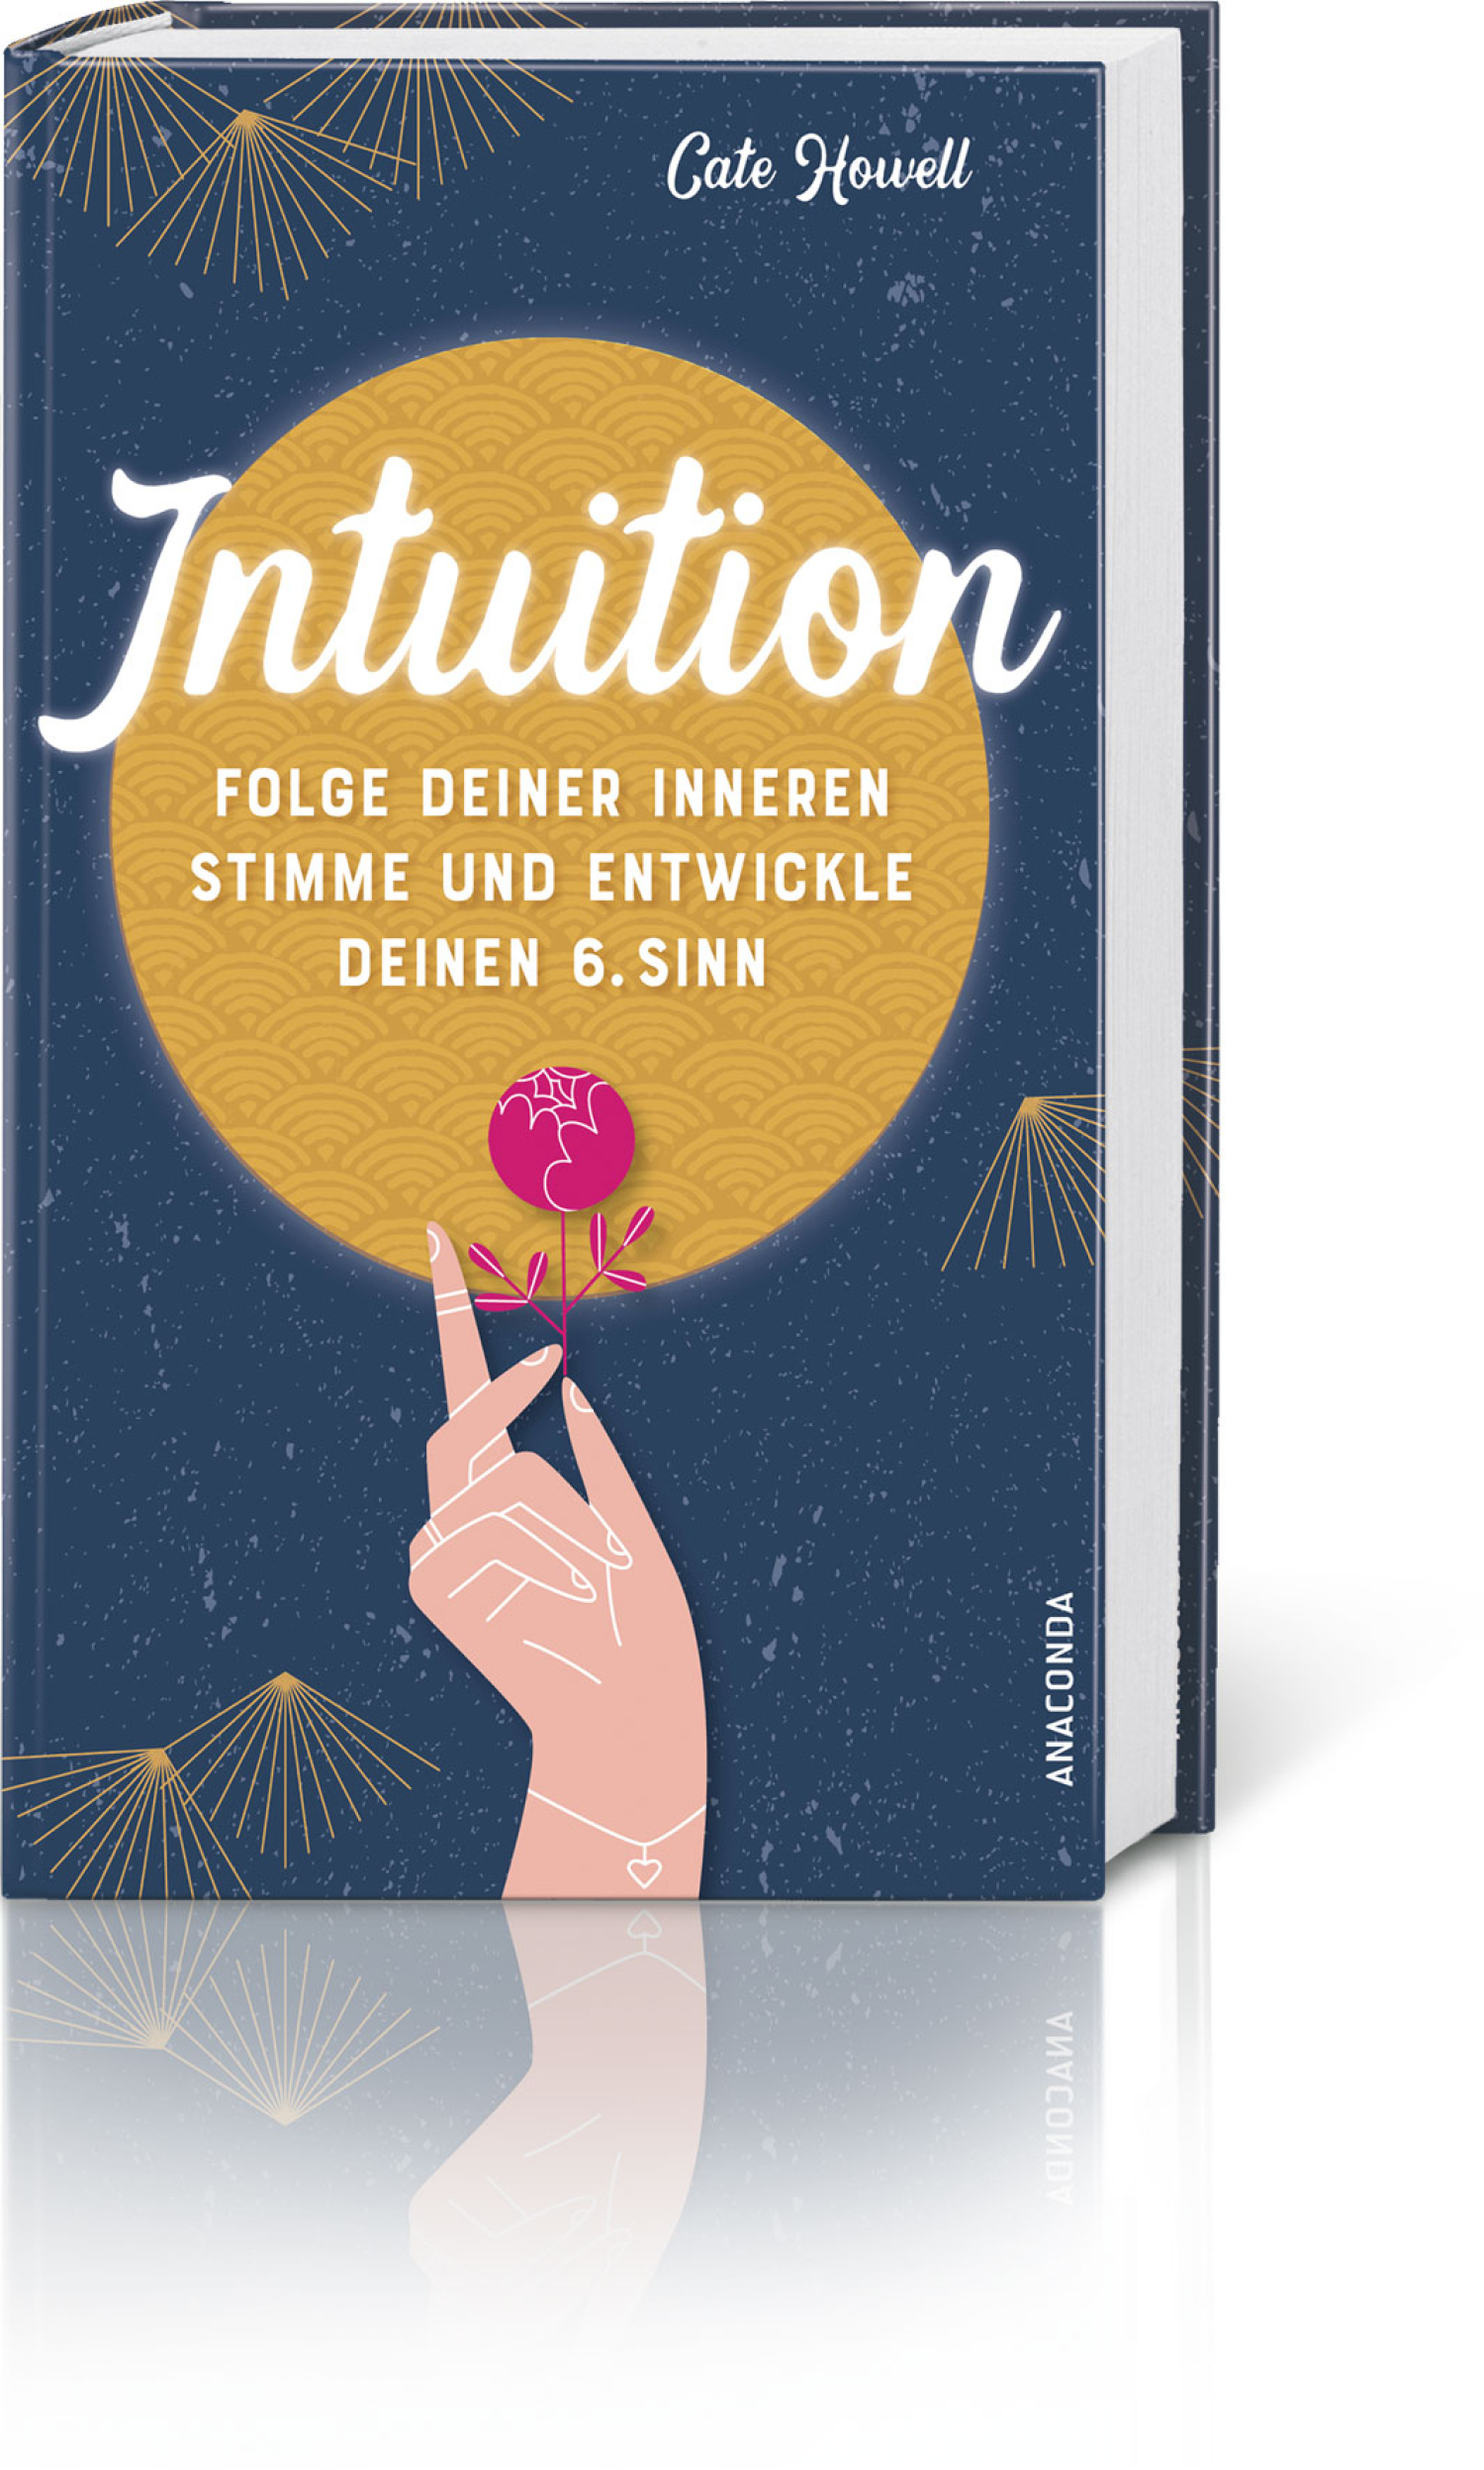 Intuition - Folge deiner inneren Stimme und entwickle deinen 6. Sinn, Produktbild 1